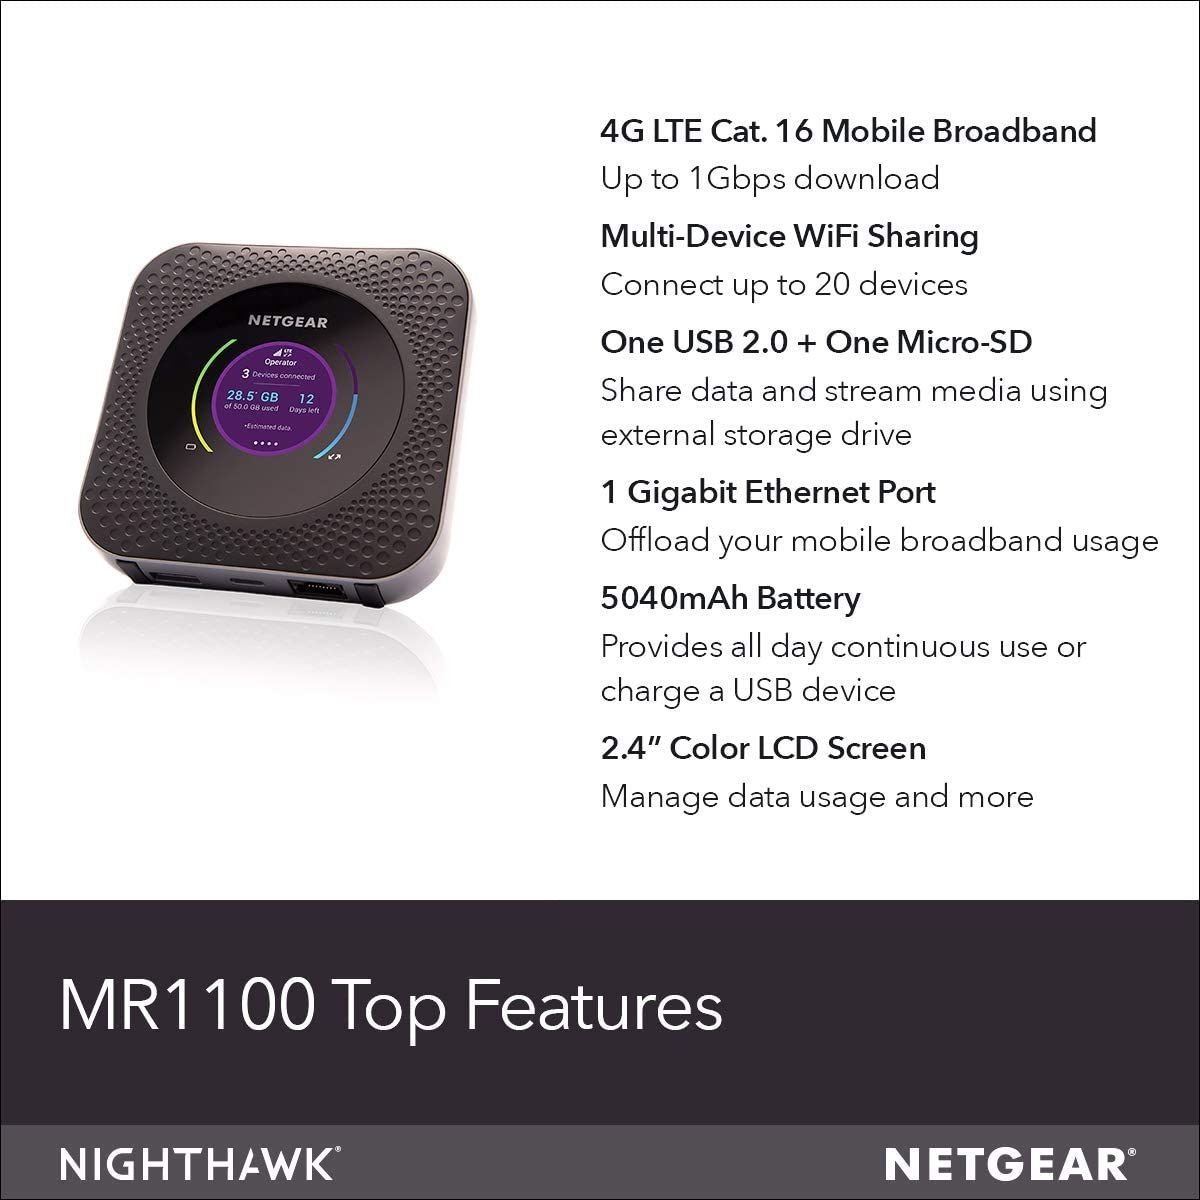 NETGEAR Nighthawk M1 features